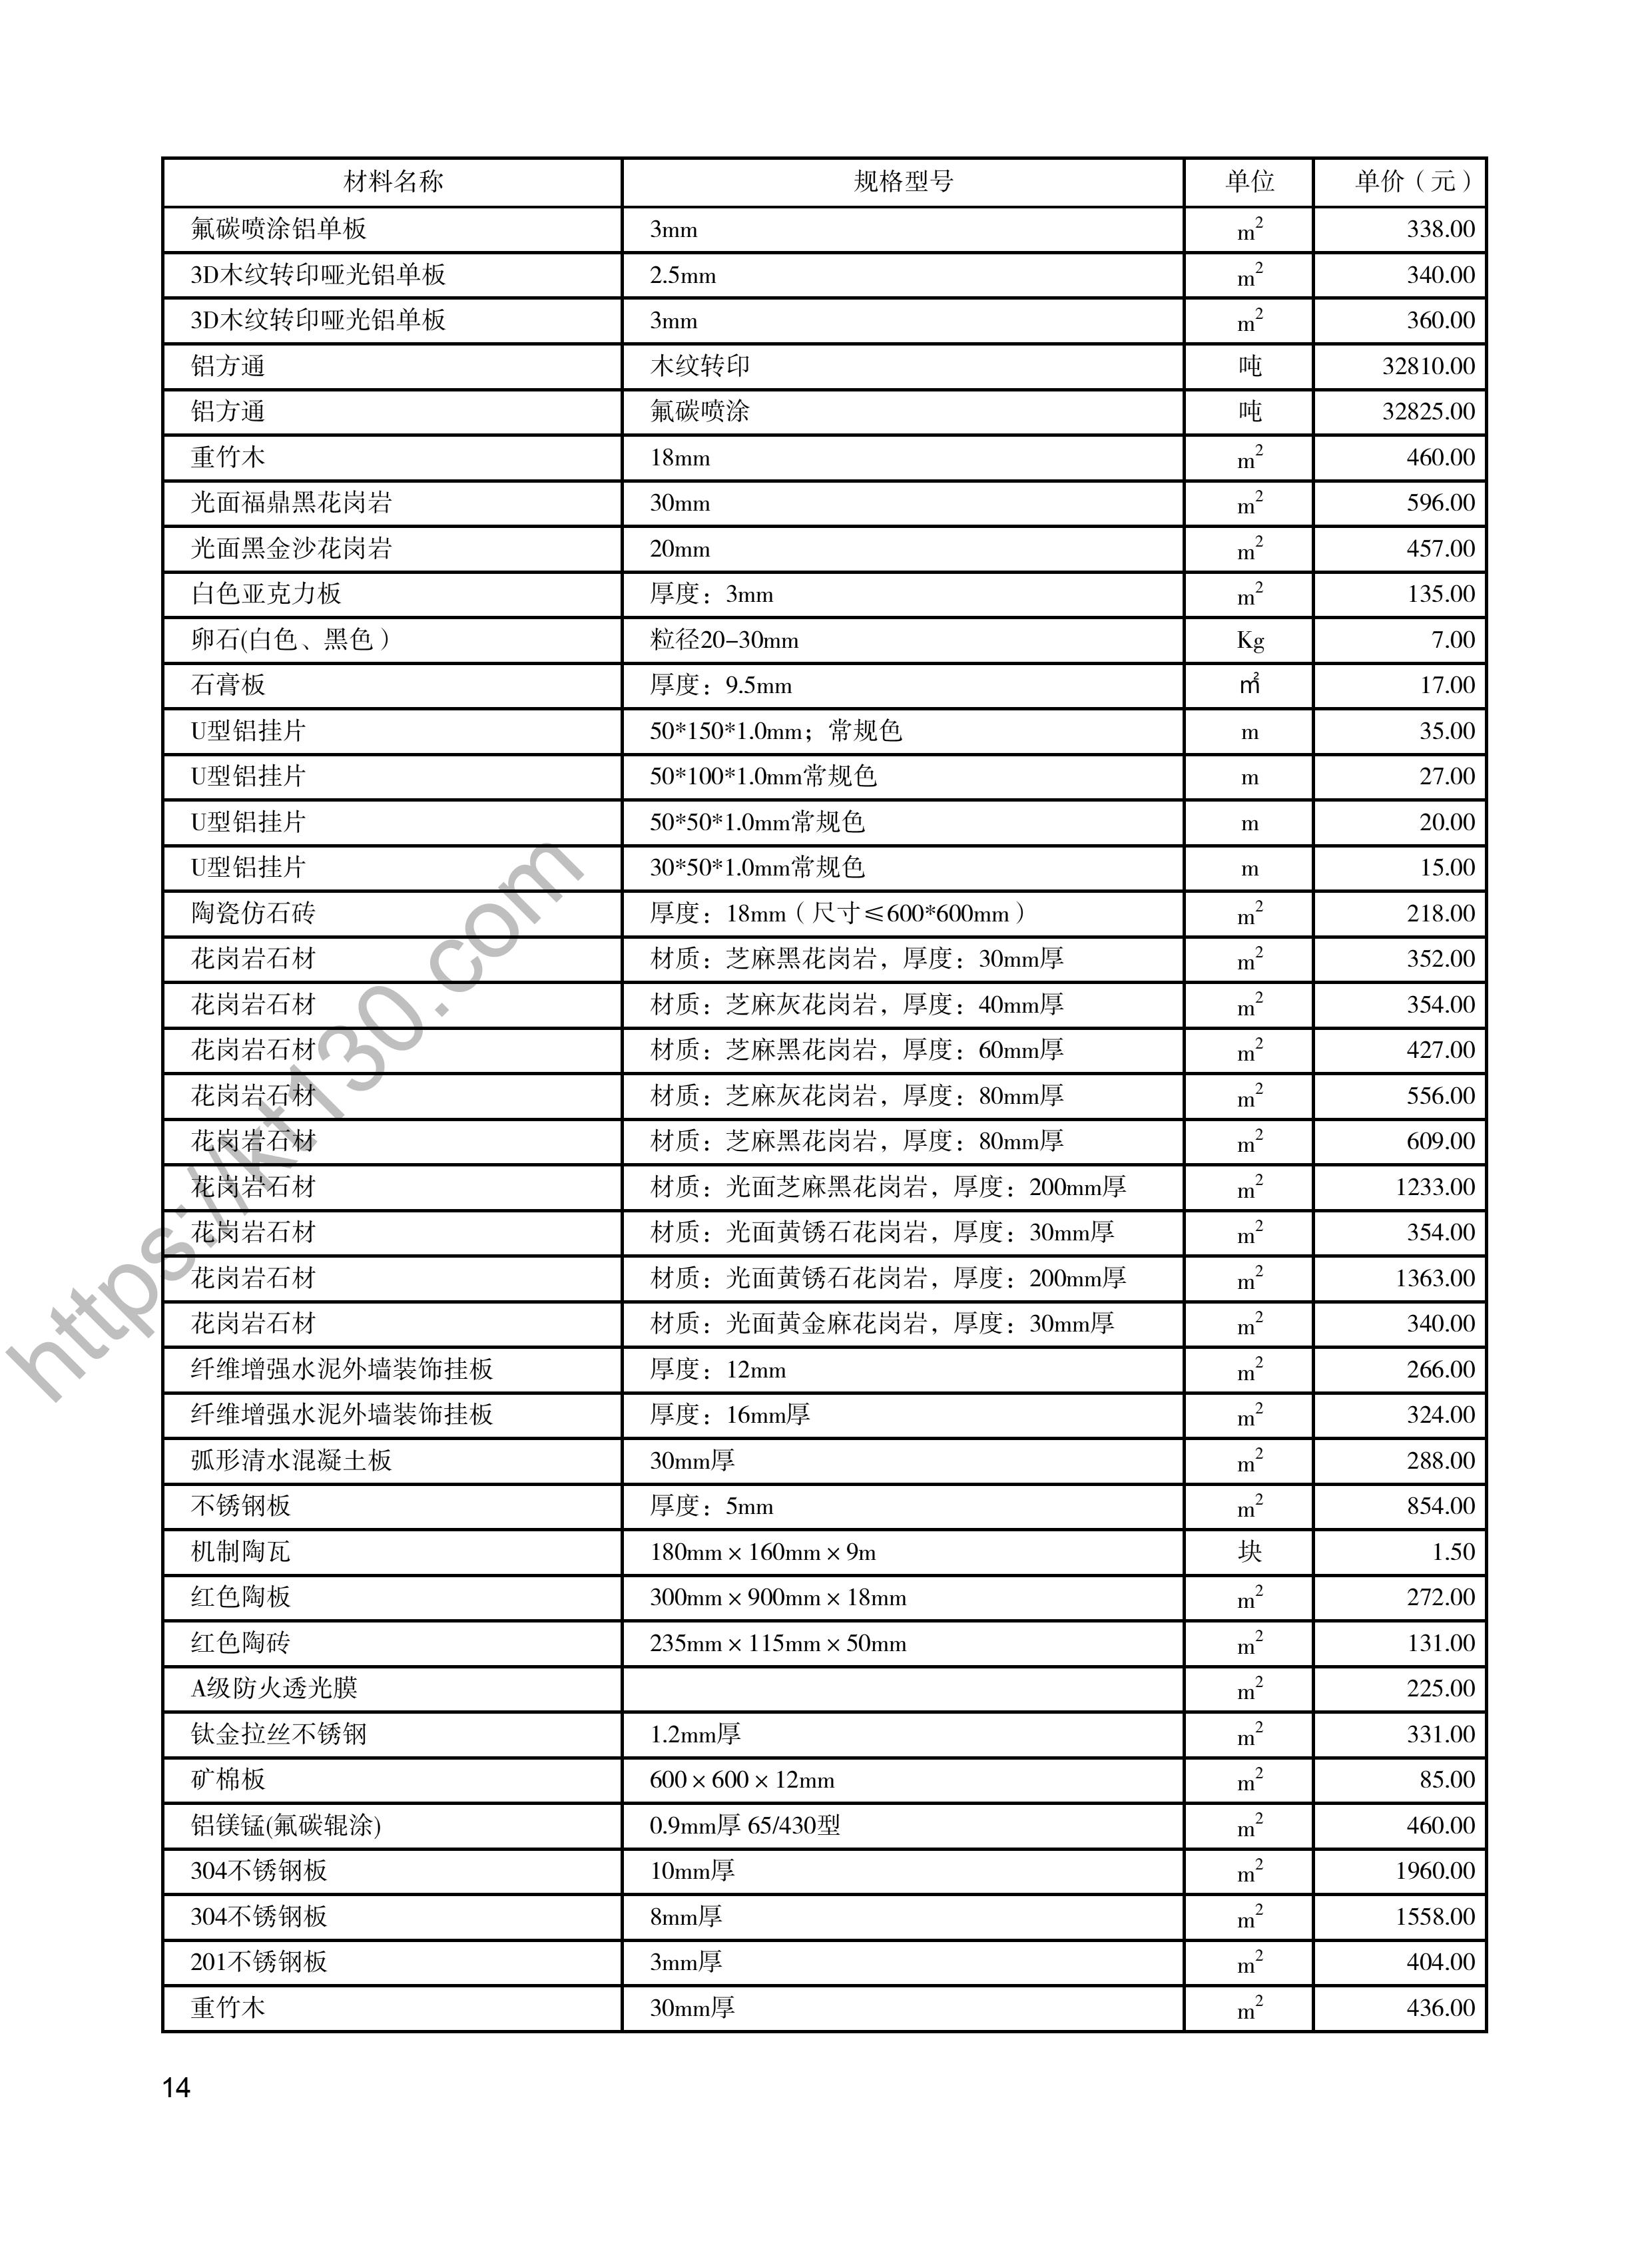 陕西省2022年2月建筑材料价_装饰材料_47951